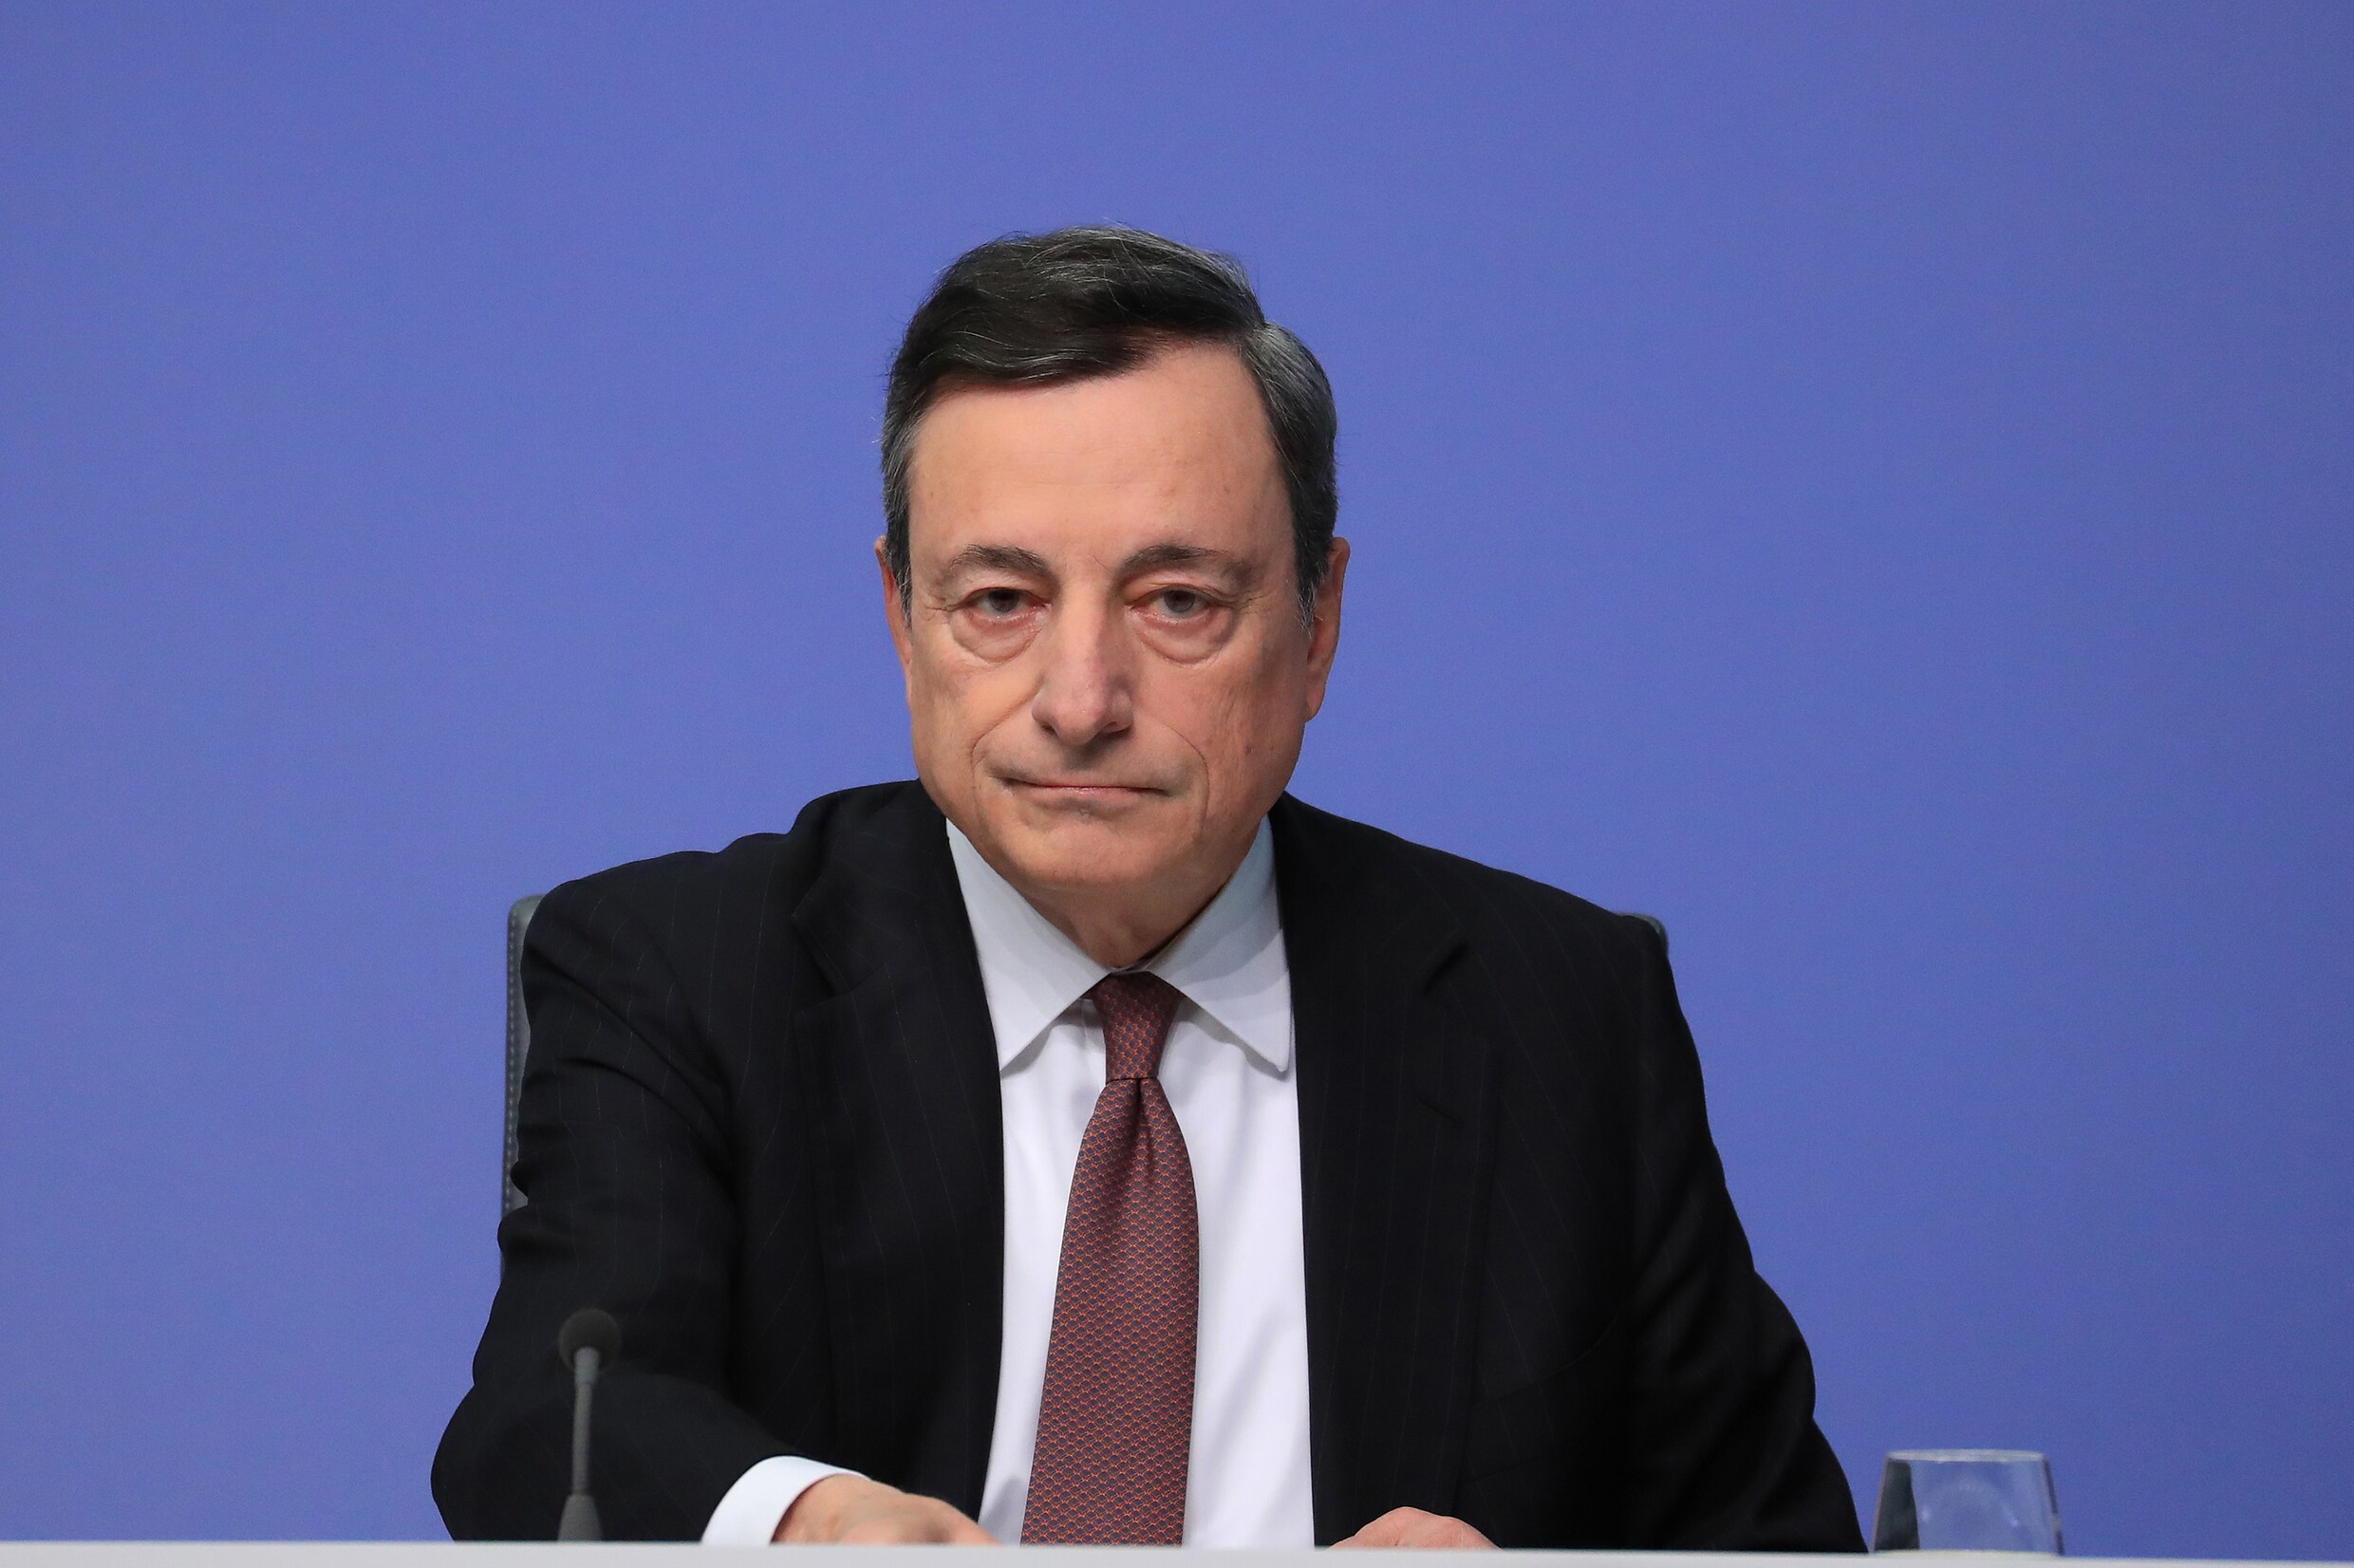 Draghi: "We manipuleren wisselkoers niet"